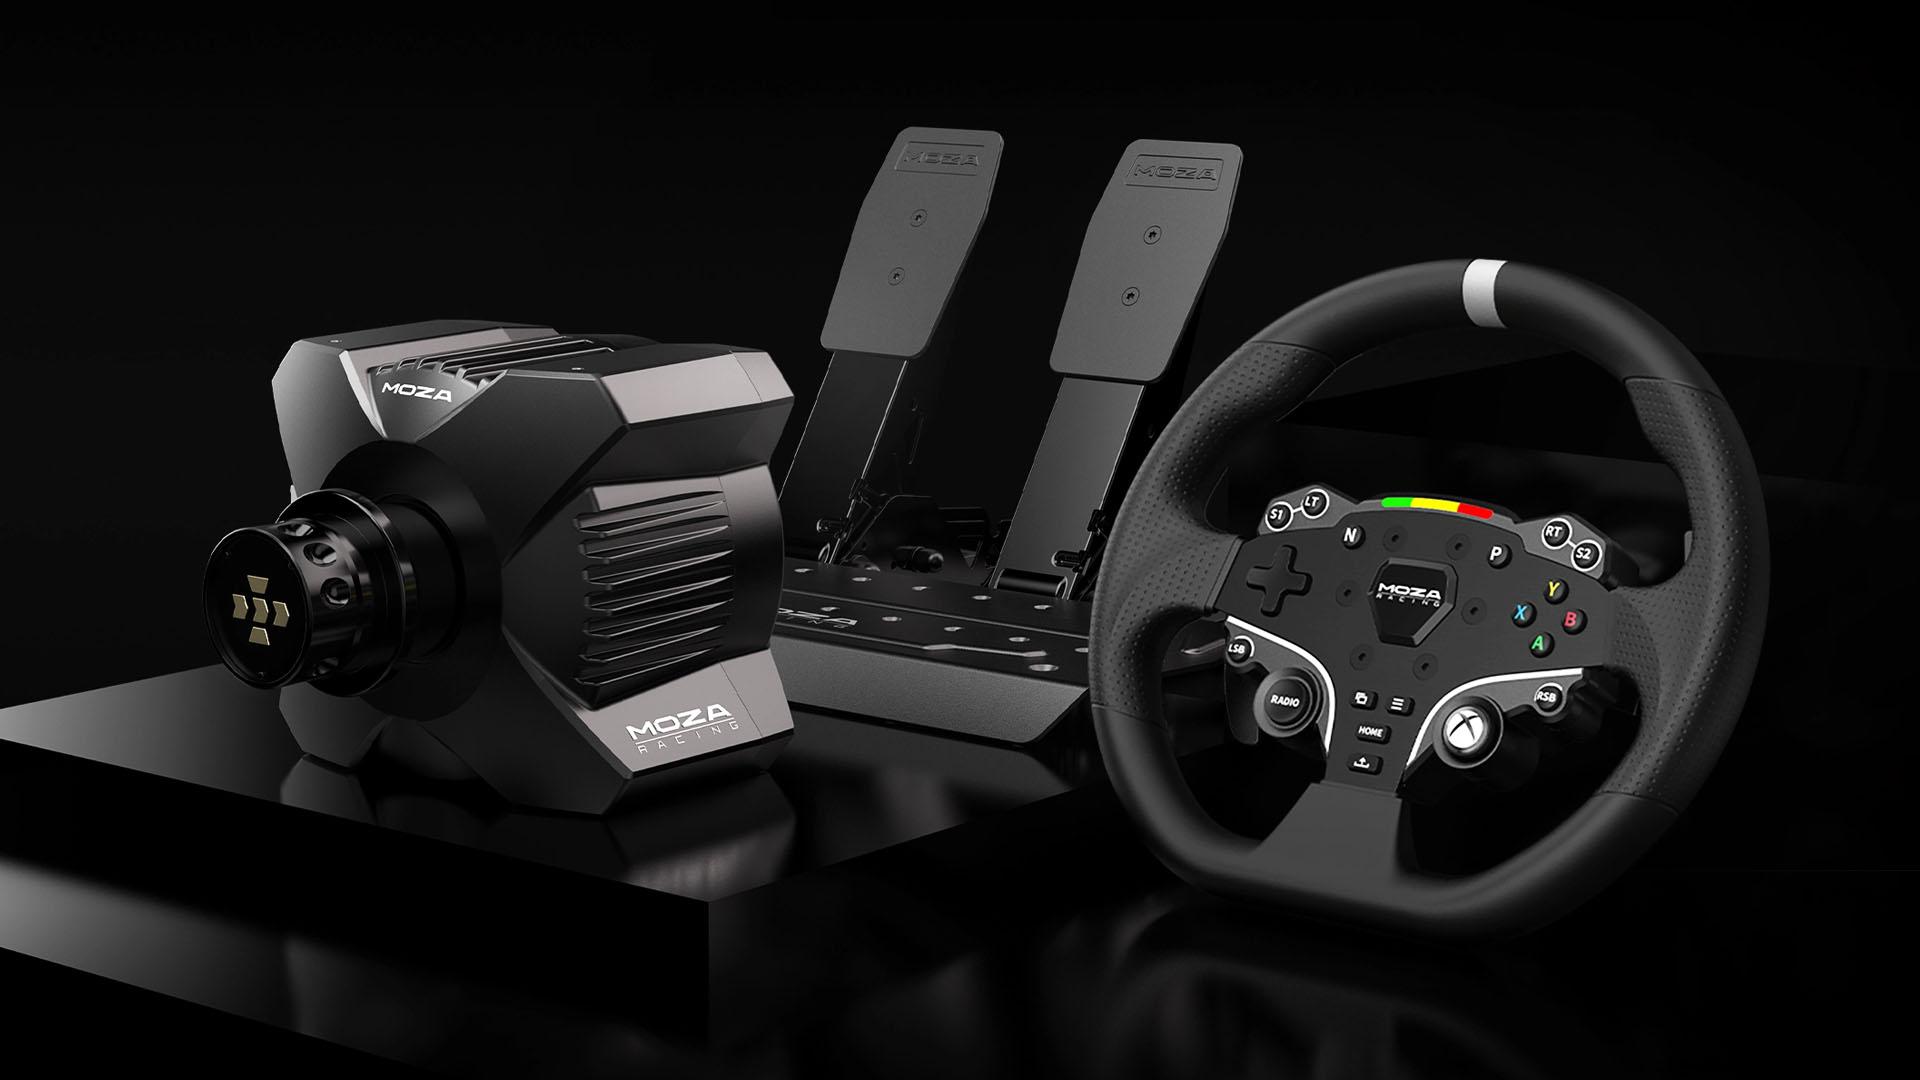 MOZA Racing ES Steering Wheel – Pit Lane Sim Racing